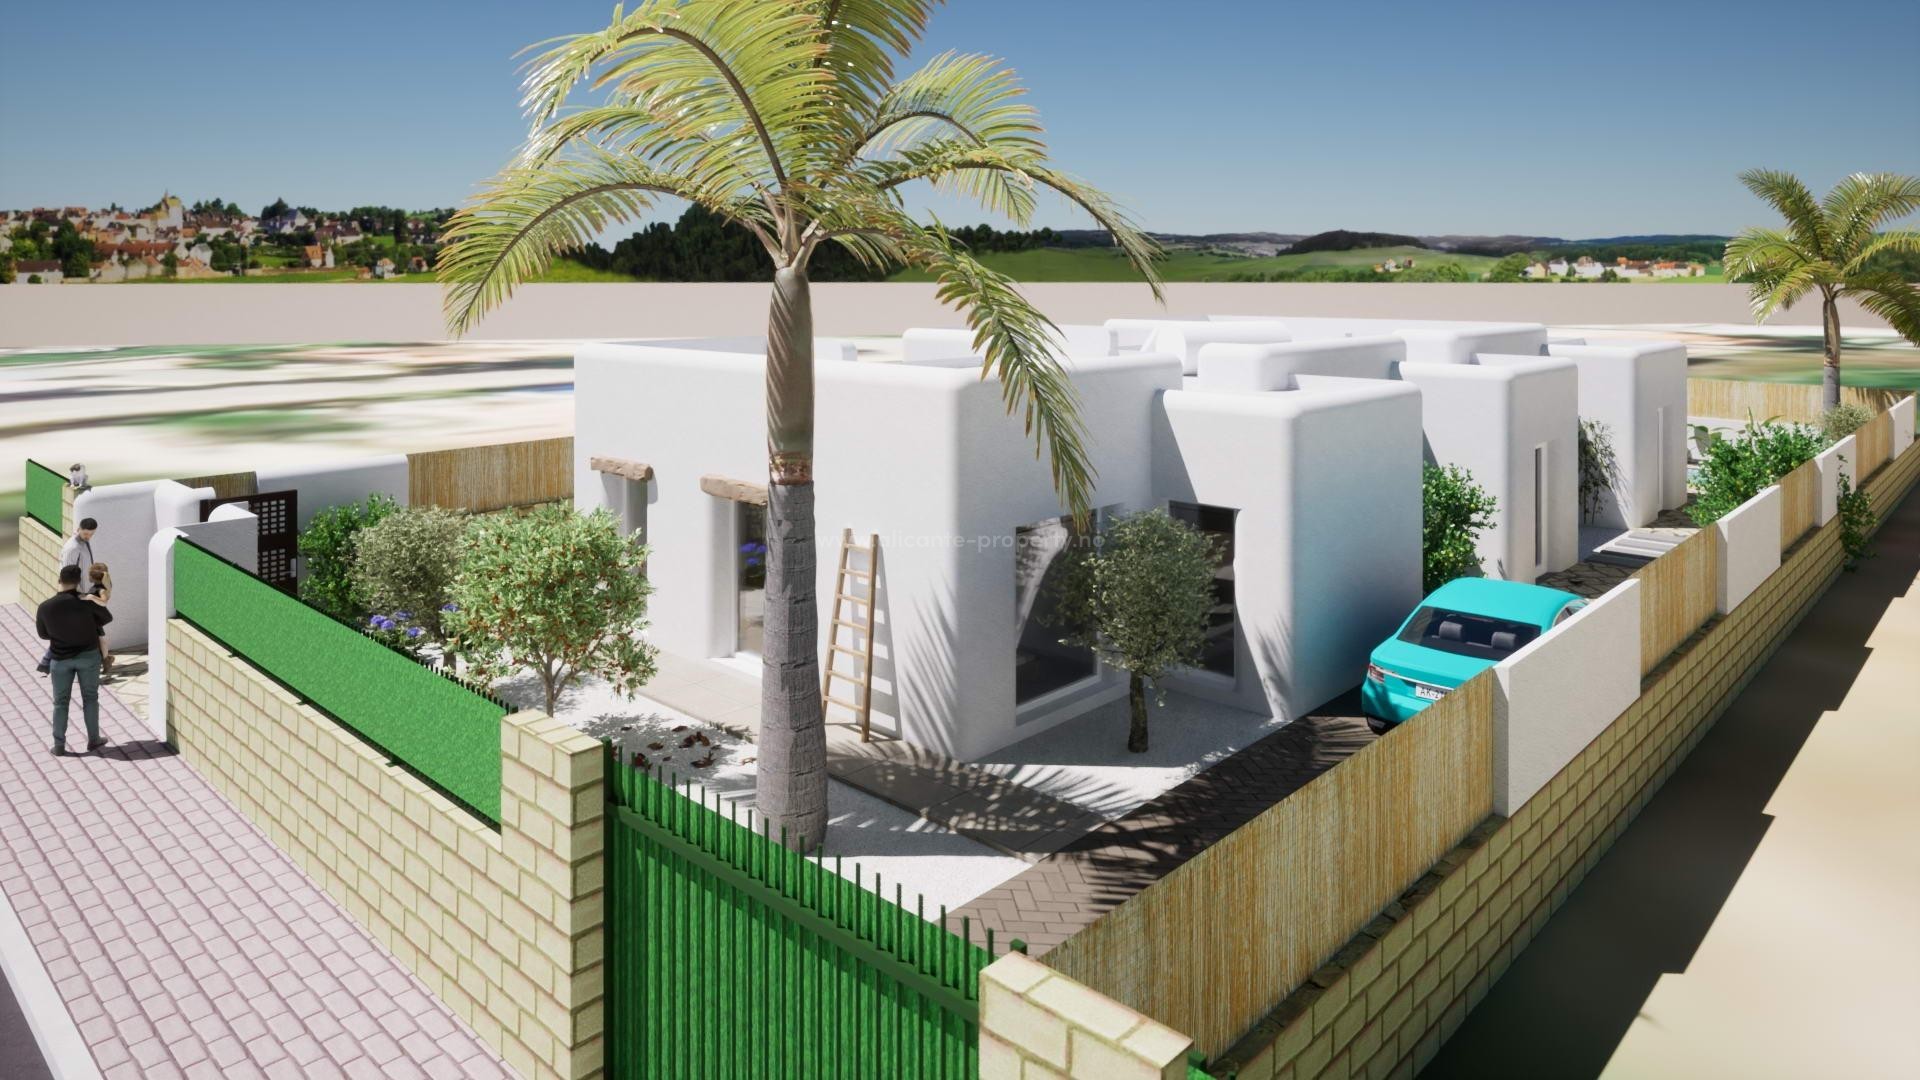 Fantastiske nybyggede villaer i Ibiza-stil i Alfaz del Pi, 3 soverom, 2 bad, fint basseng og terrasse